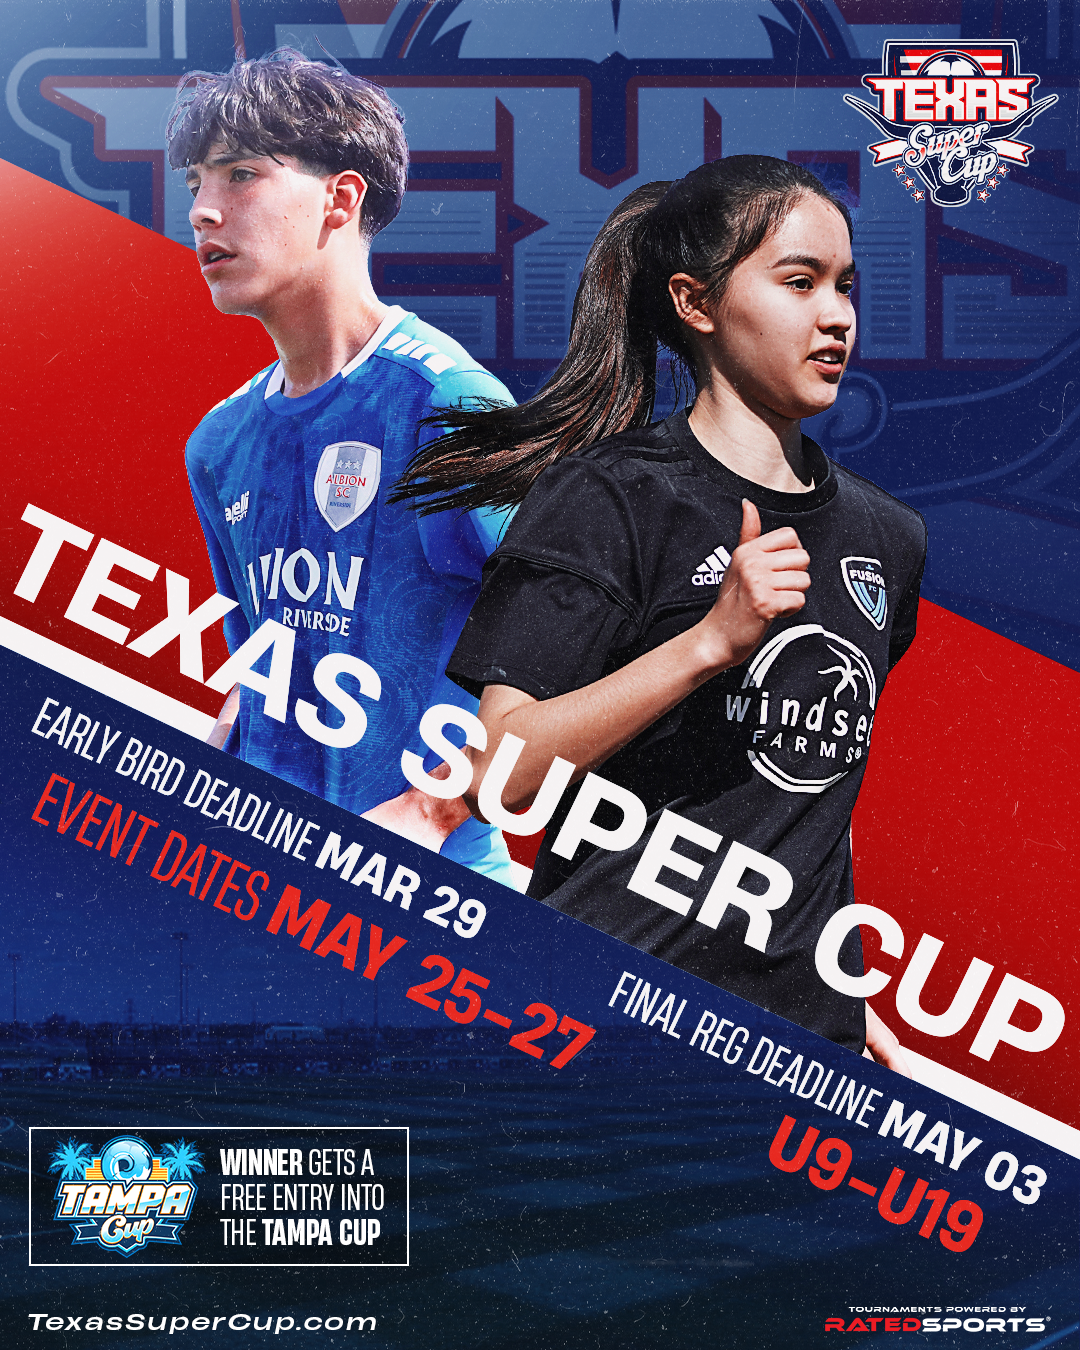 Texas Super Cup